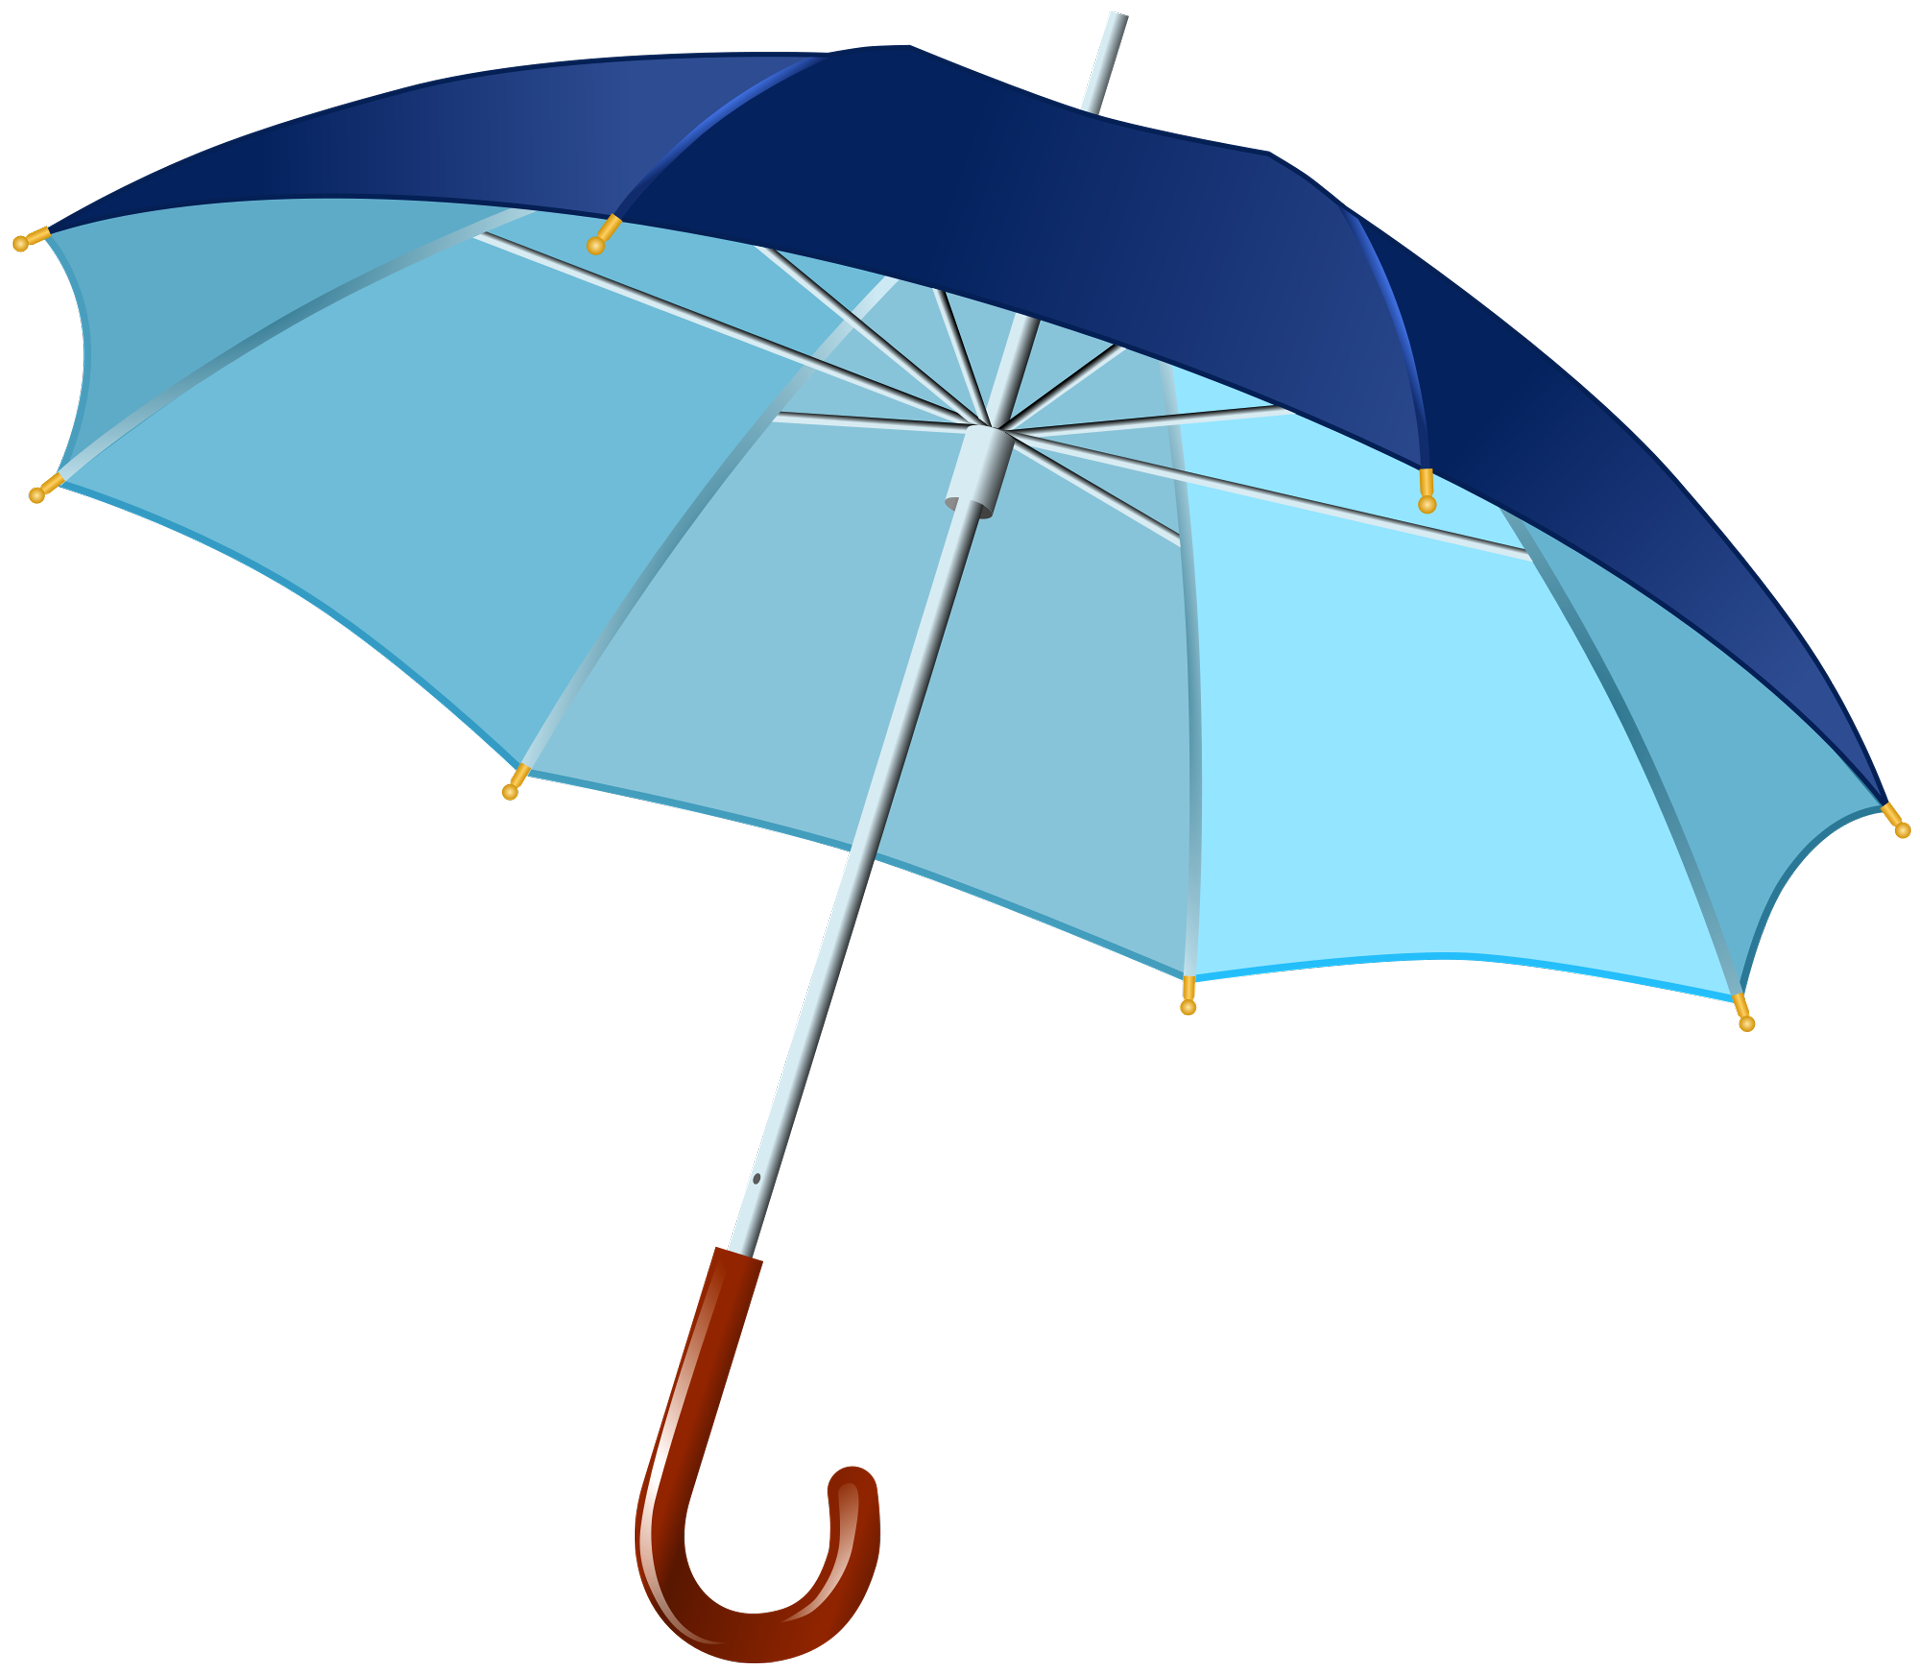 Umbrella Png Image - Umbrella, Transparent background PNG HD thumbnail